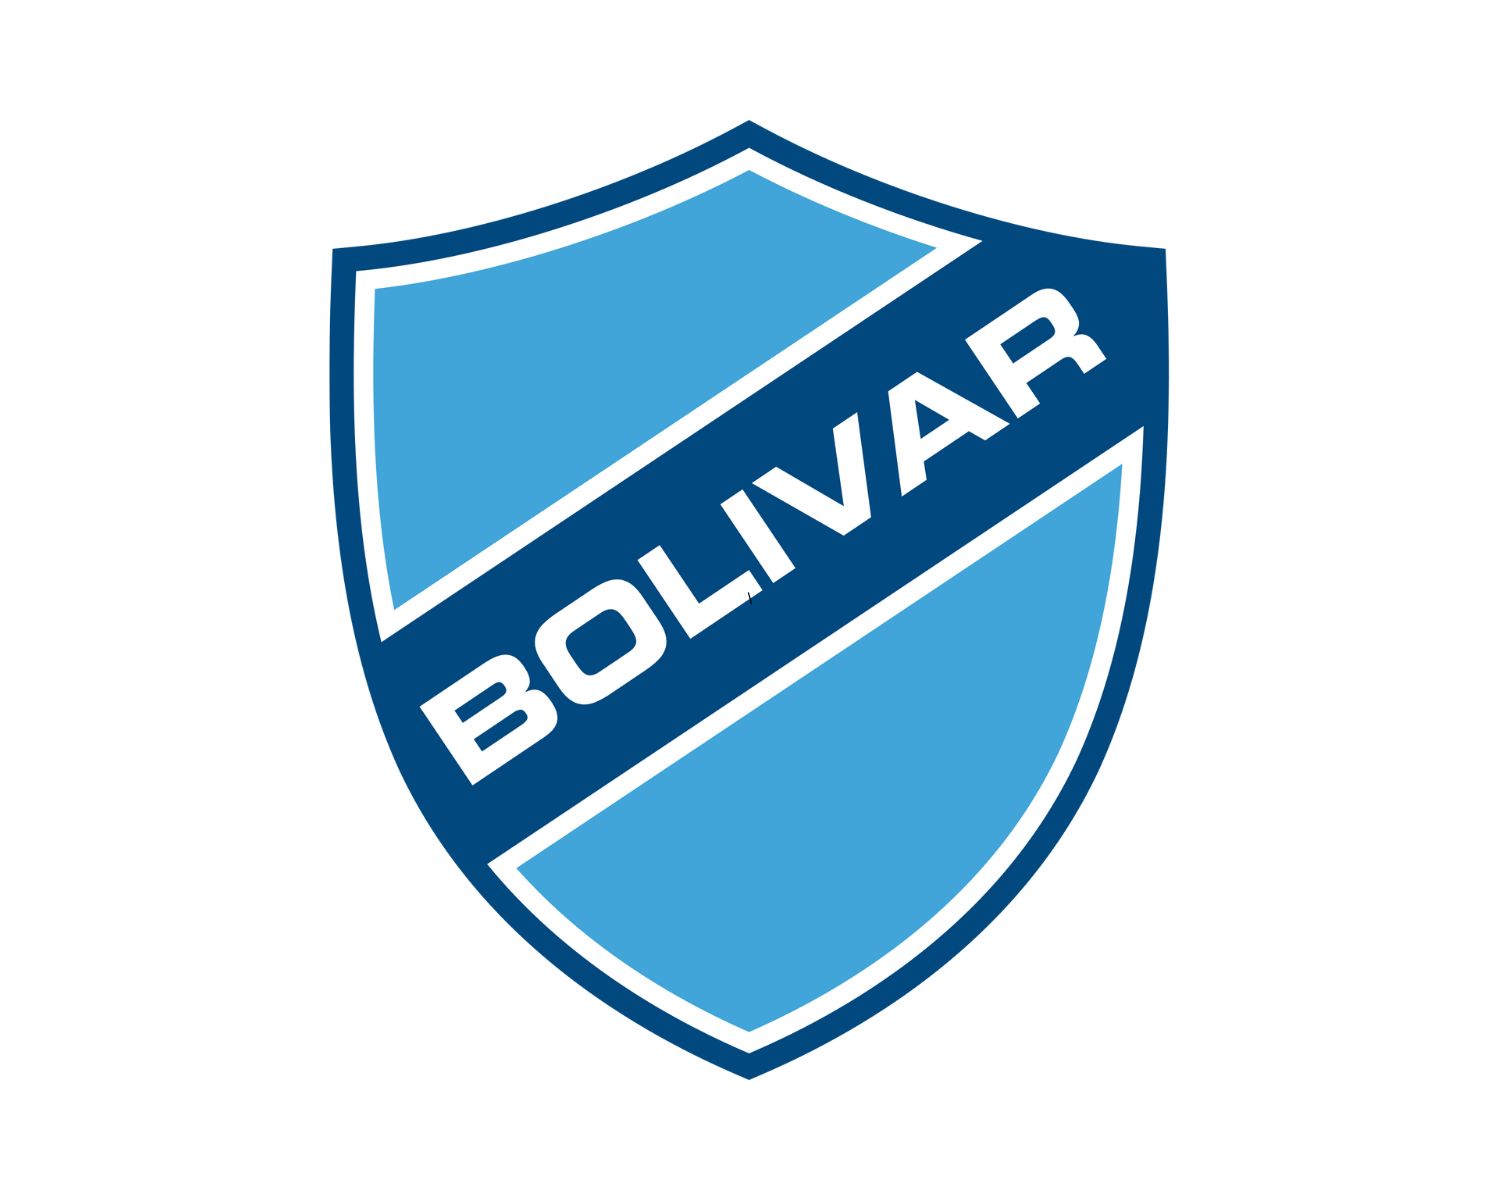 club-bolivar-11-football-club-facts